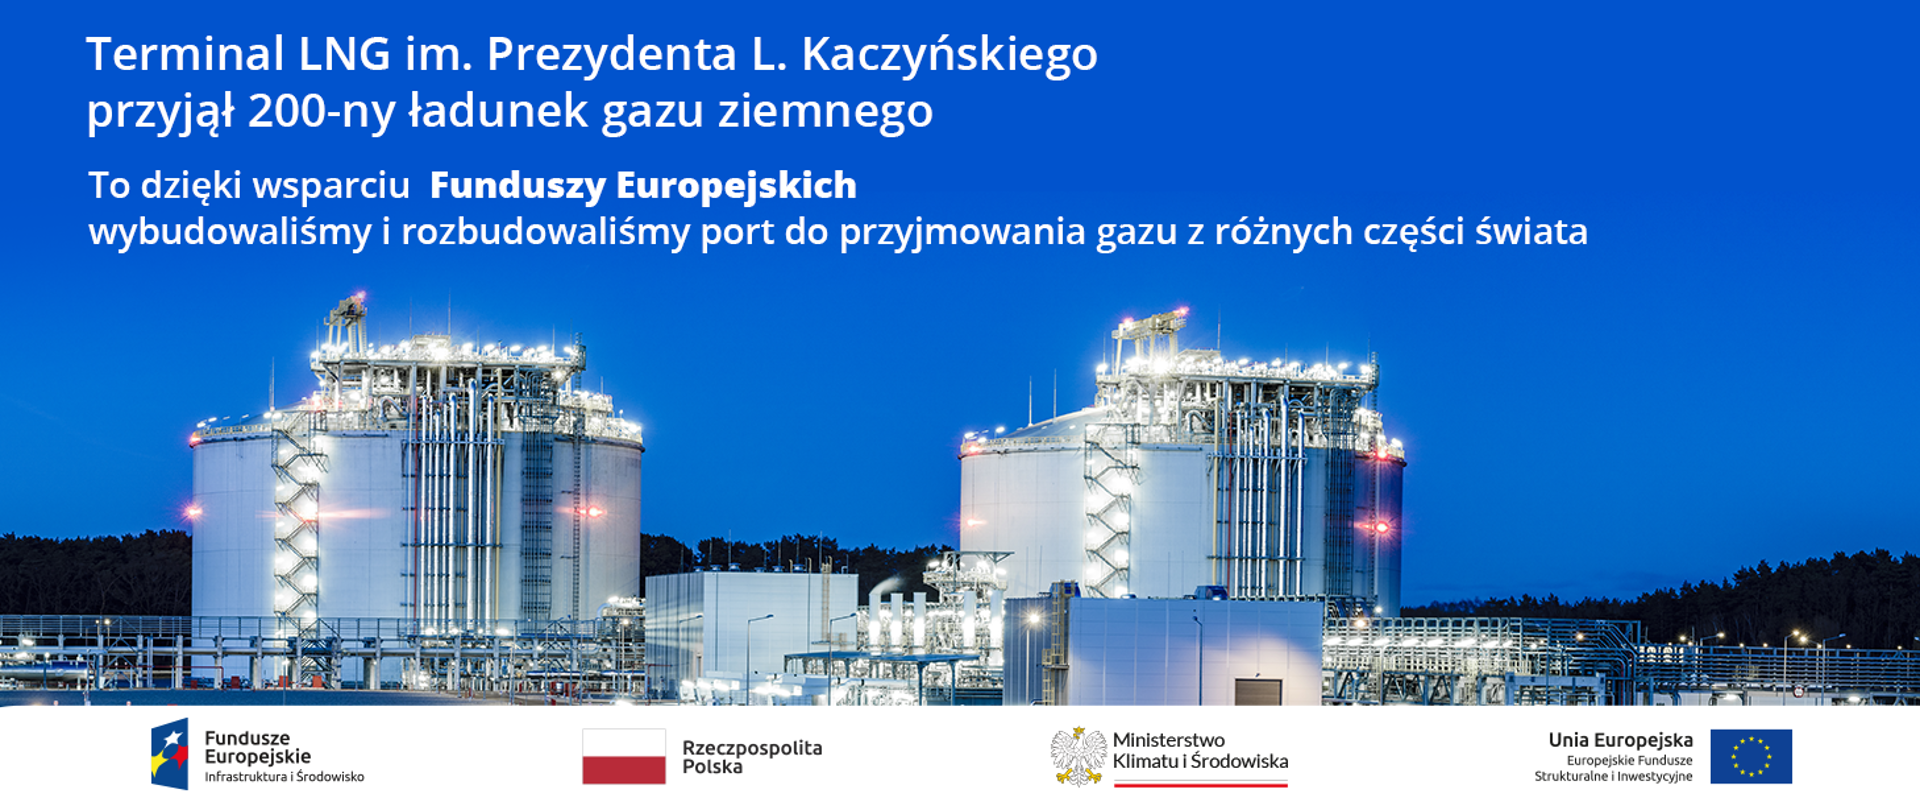 W Terminalu LNG im. Prezydenta L. Kaczyńskiego odebrano 200-ny ładunek gazu ziemnego